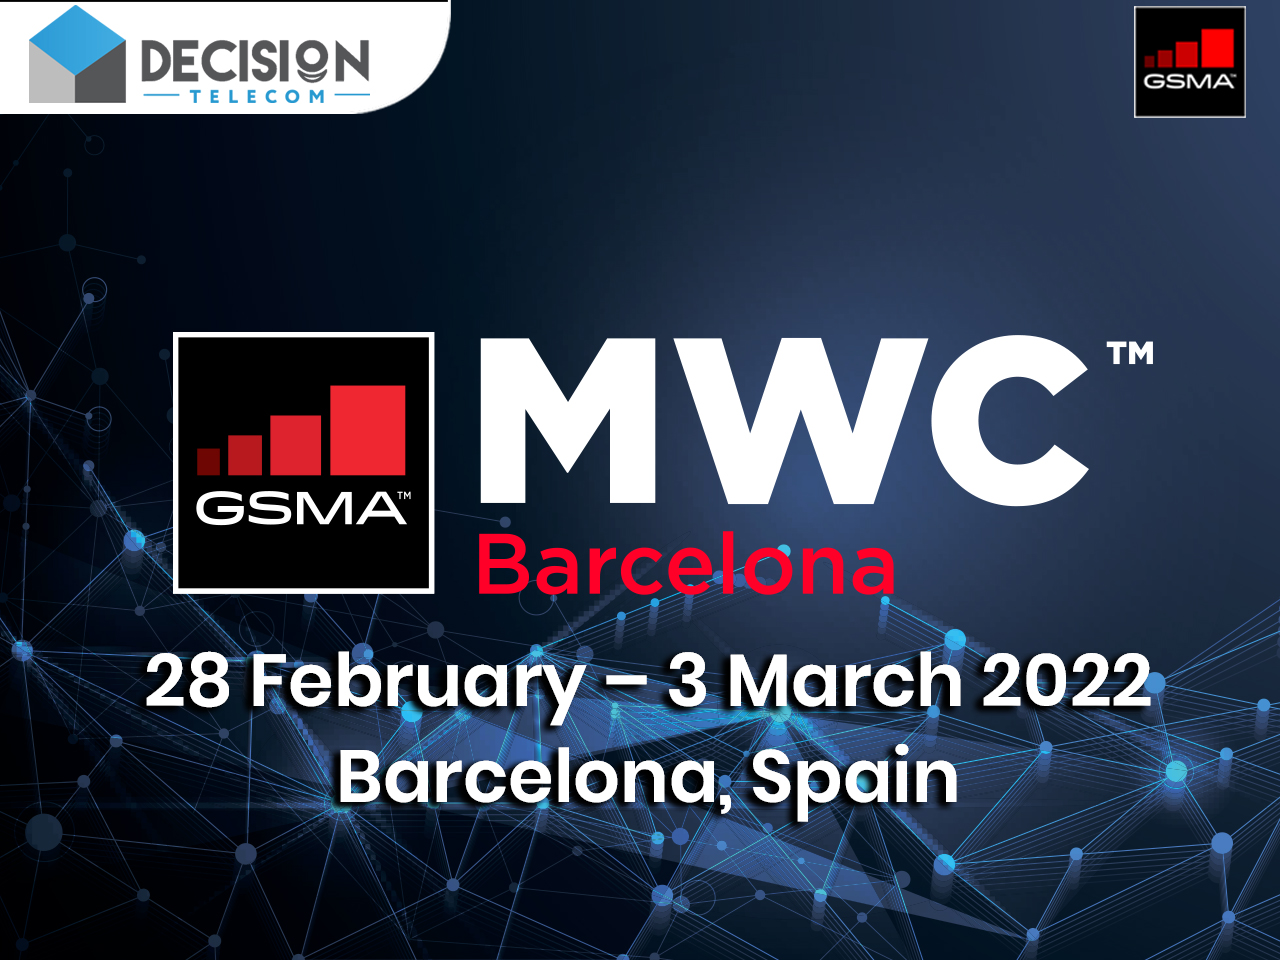 Meet ITD Telecom at Mobile World Congress Barcelona 2022!